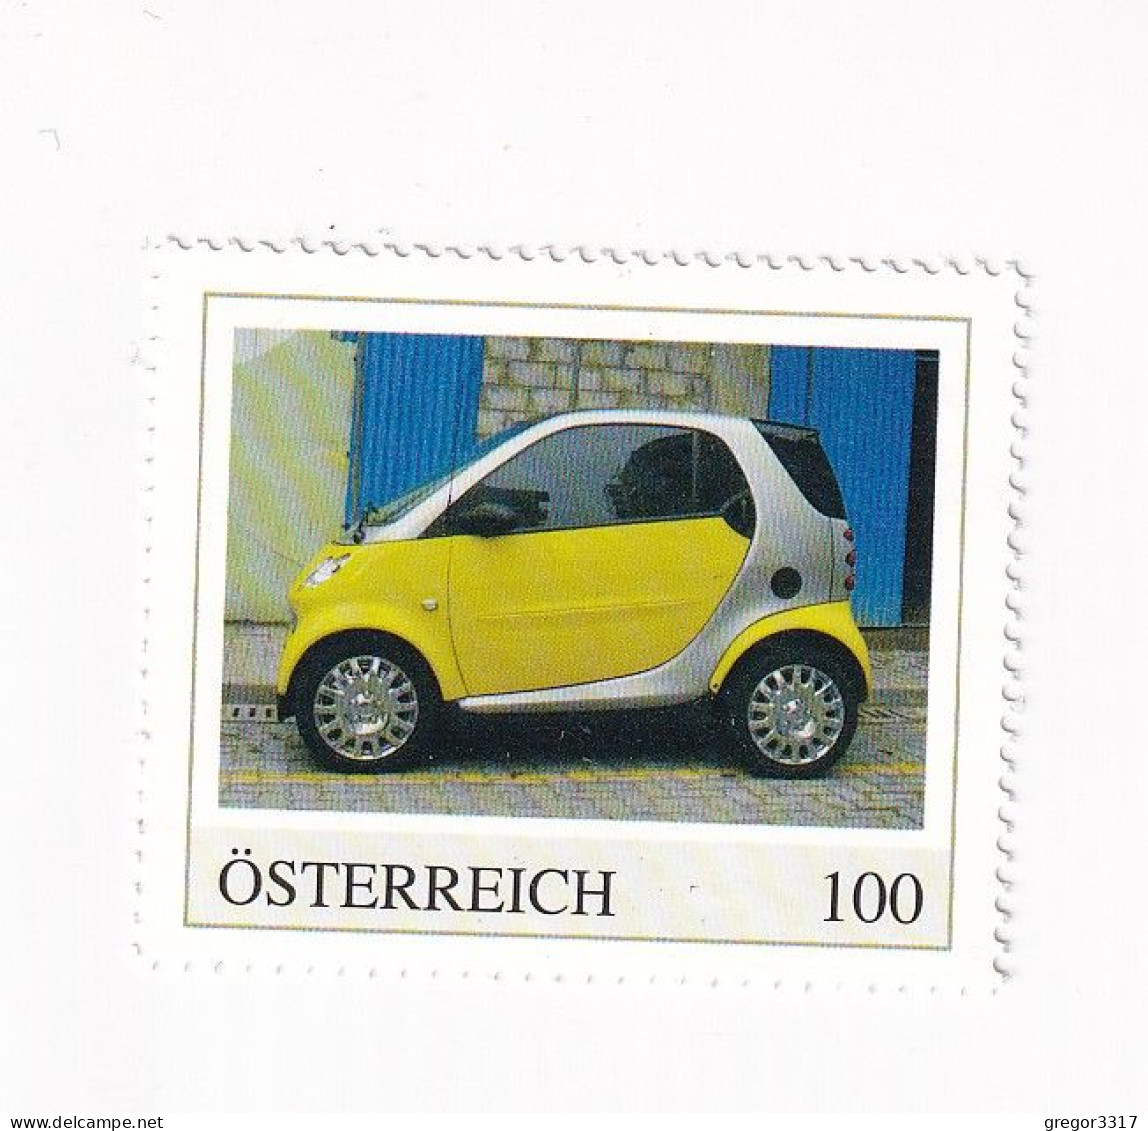 ÖSTERREICH - AUTO -  AUTOMOBILE Im Lauf Der ZEIT - SMART Fortwo - Personalisierte Briefmarke ** Postfrisch - Timbres Personnalisés